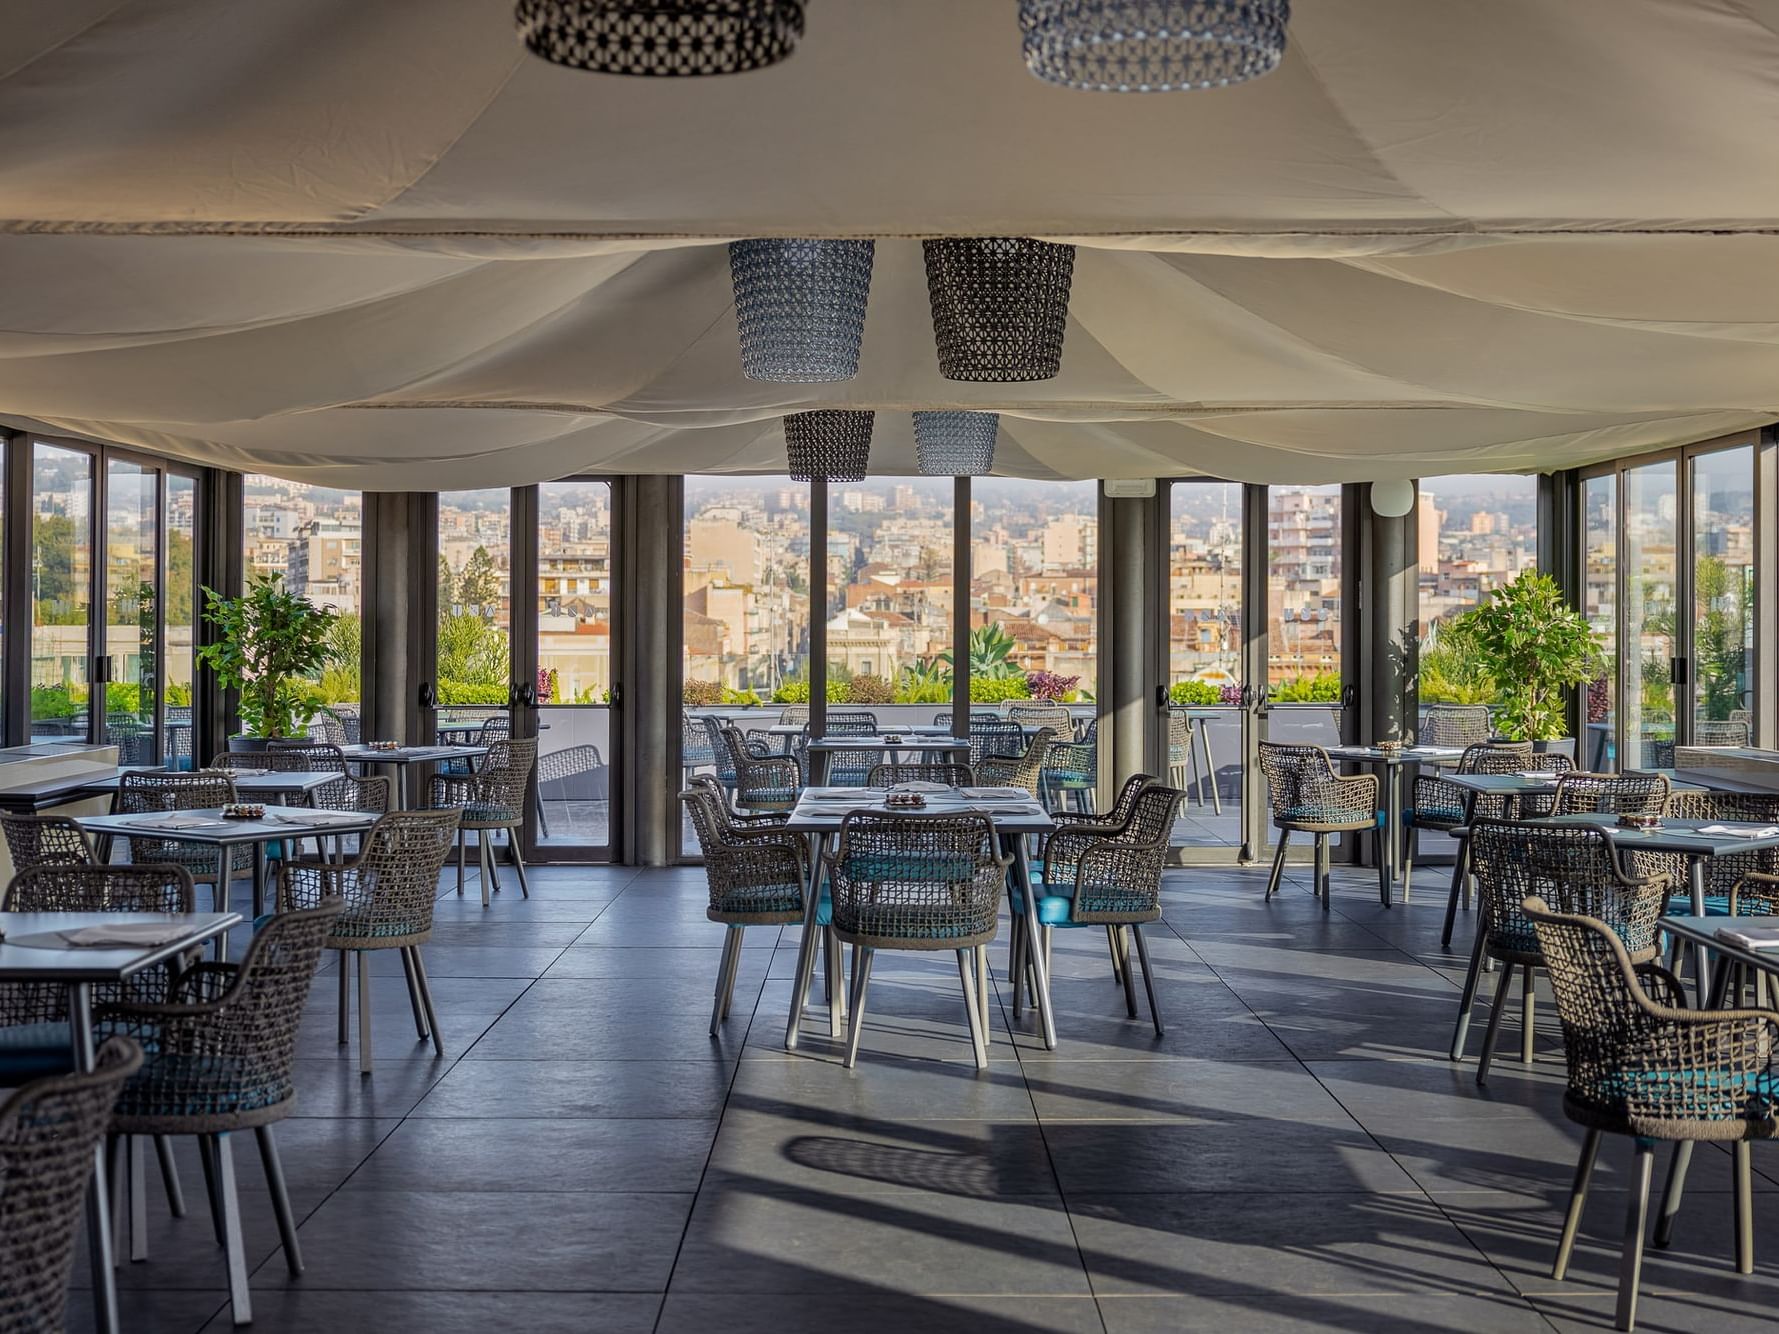 Palace Catania | UNA Esperienze: panoramic restaurant in Catania